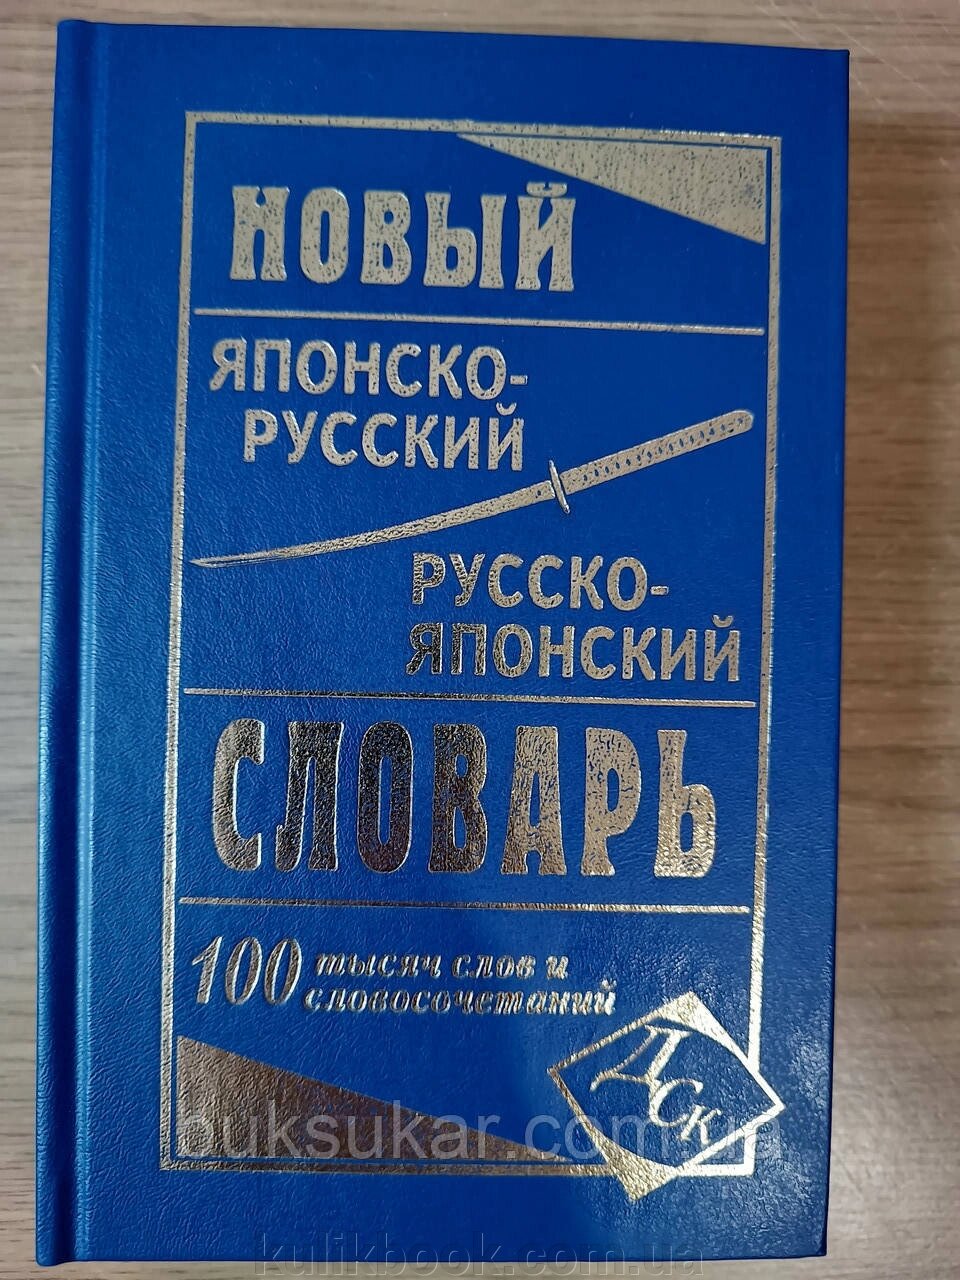 Новий японсько-російський та російсько-японський словник 100 000 слів від компанії Буксукар - фото 1